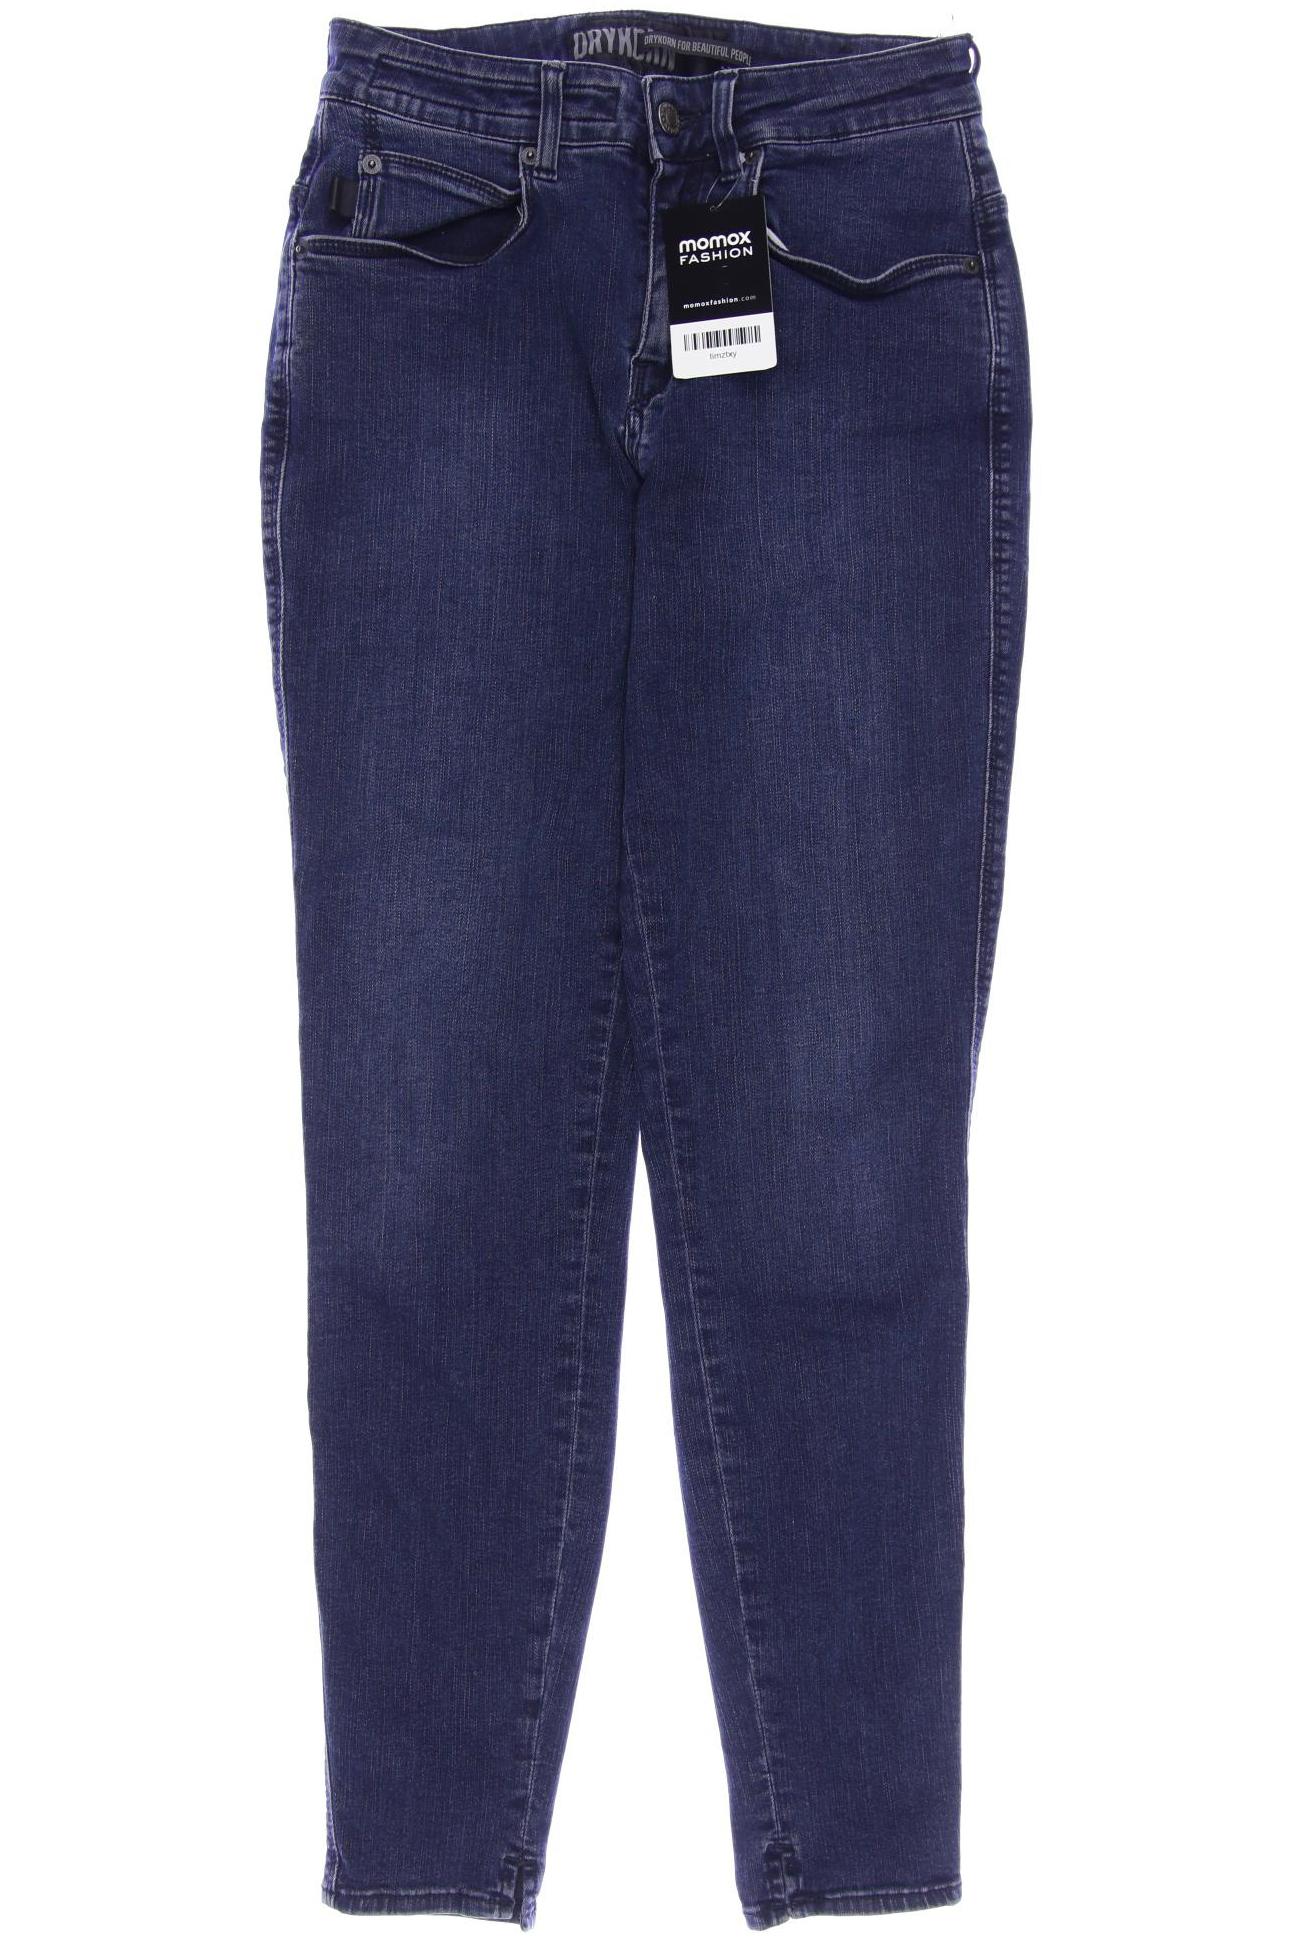 Drykorn Damen Jeans, marineblau, Gr. 38 von drykorn